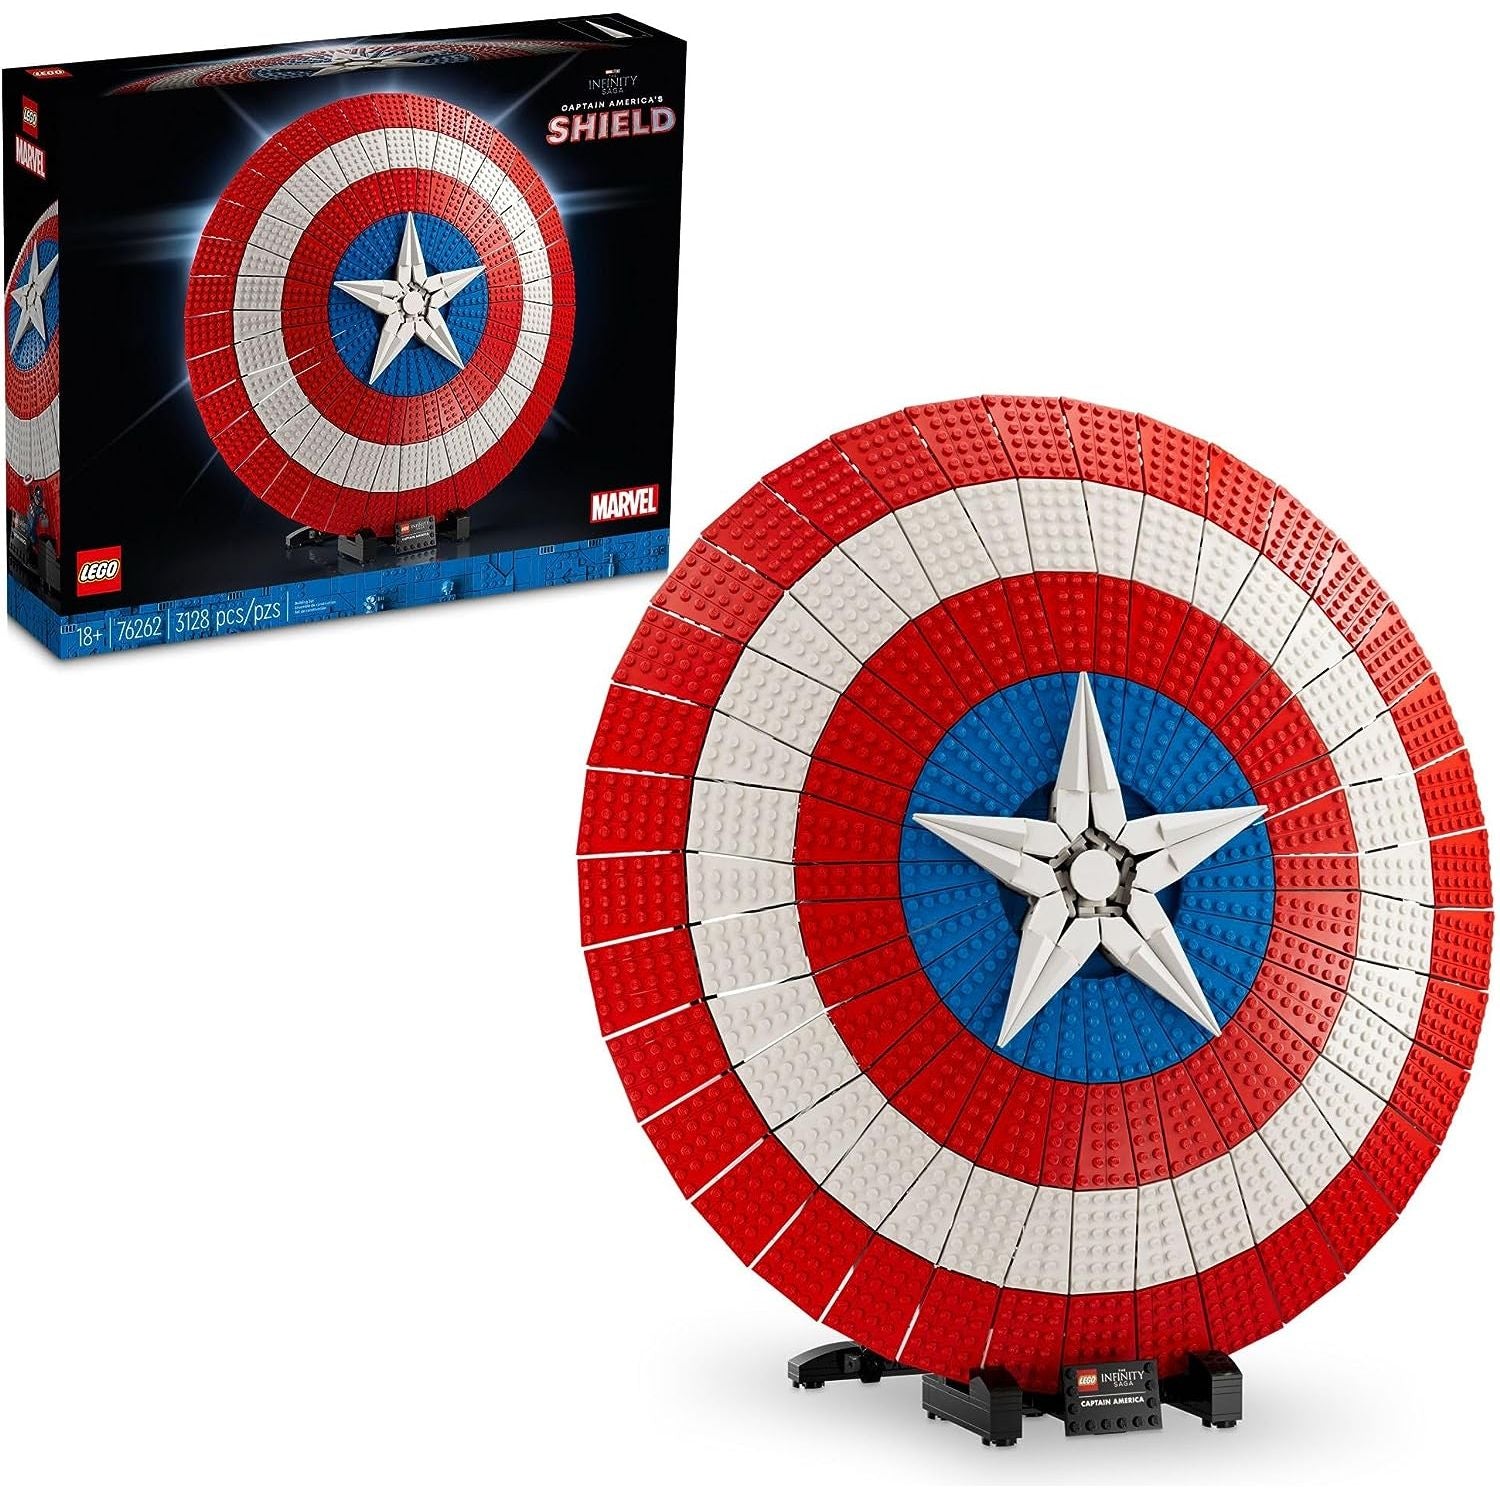 مجموعة نماذج LEGO Marvel Captain America's Shield 76262 للبالغين، نسخة طبق الأصل من درع Captain America الأيقوني، مجموعة بناء Disney Marvel للبالغين تمثل هدية تخرج رائعة